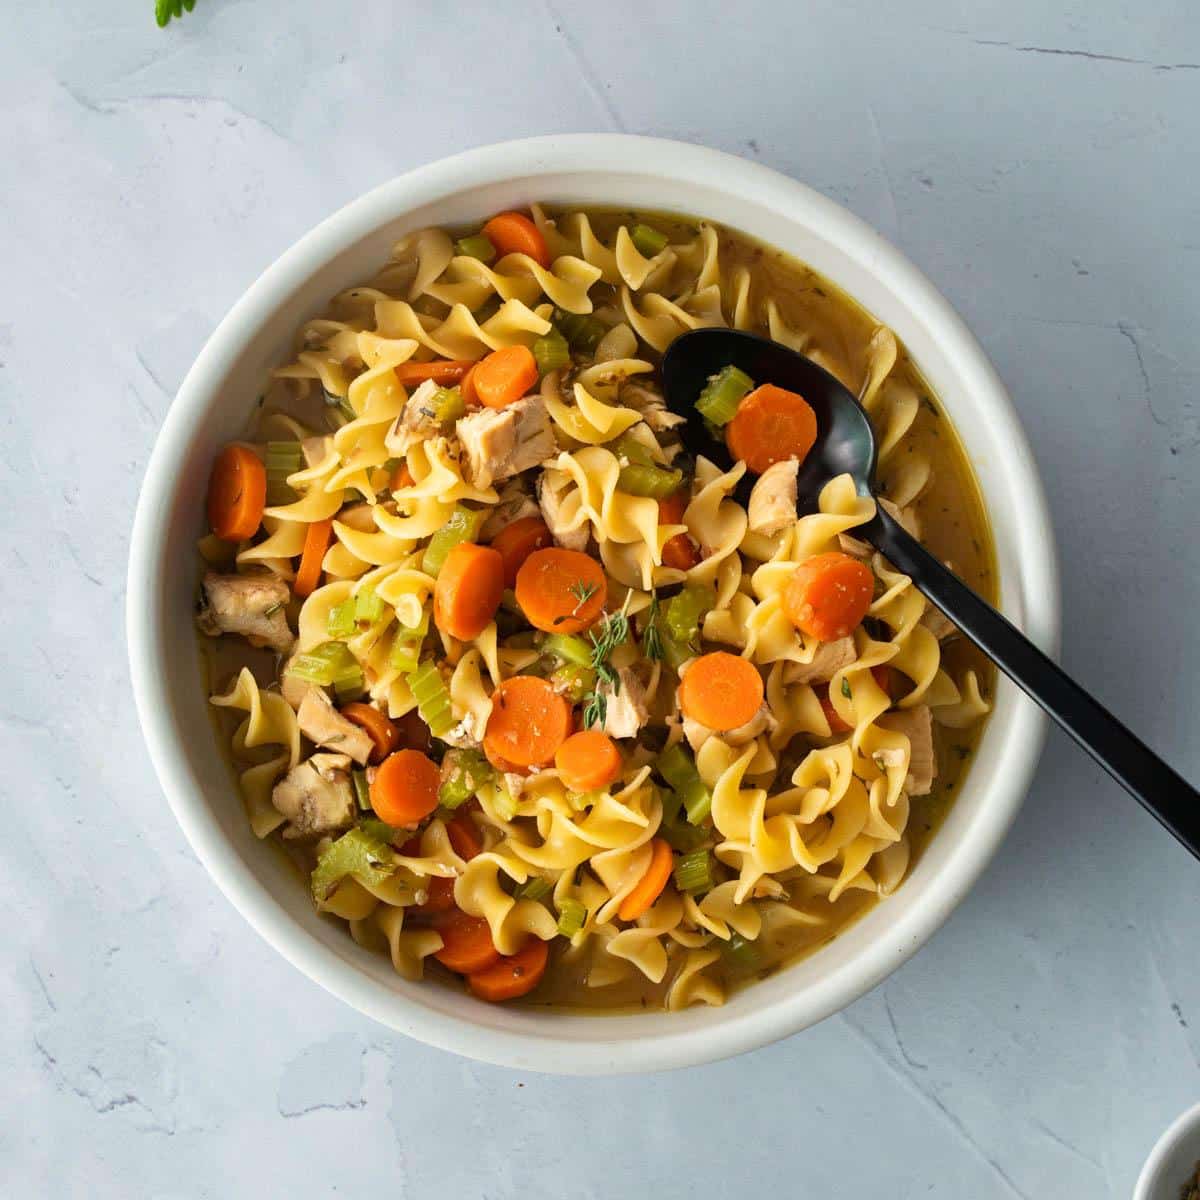 bowl of egg noodles, carrots in bowl